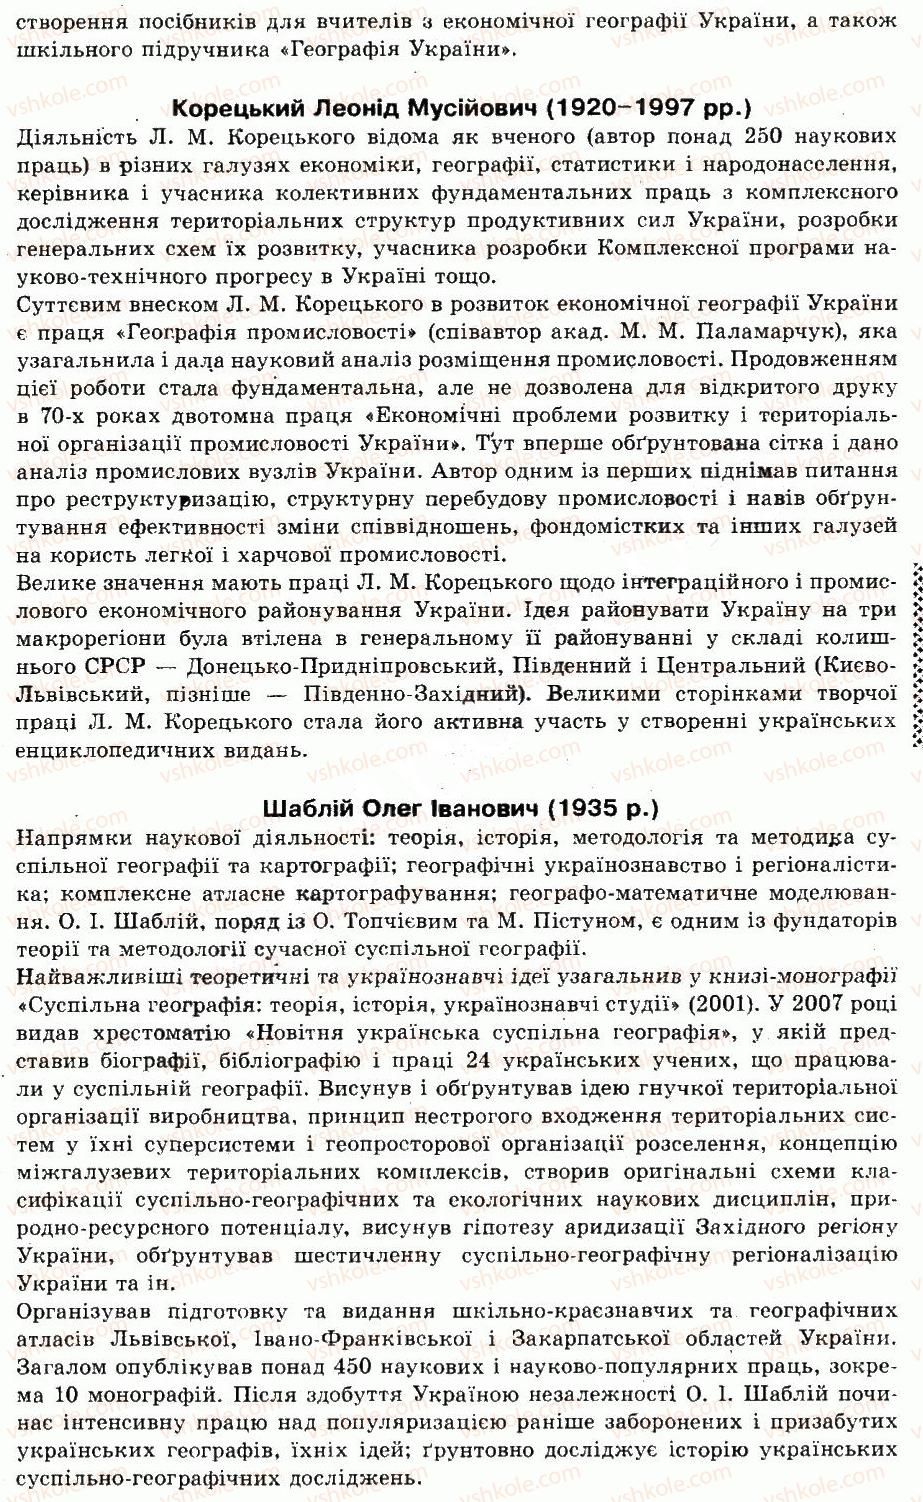 9-geografiya-of-nadtoka-om-topuzov-2009--vstup-1-aktualnist-predmeta-ekonomichnoyi-i-sotsialnoyi-geografiyi-ukrayini-v-sistemi-geografichnoyi-nauki-3-rnd1089.jpg